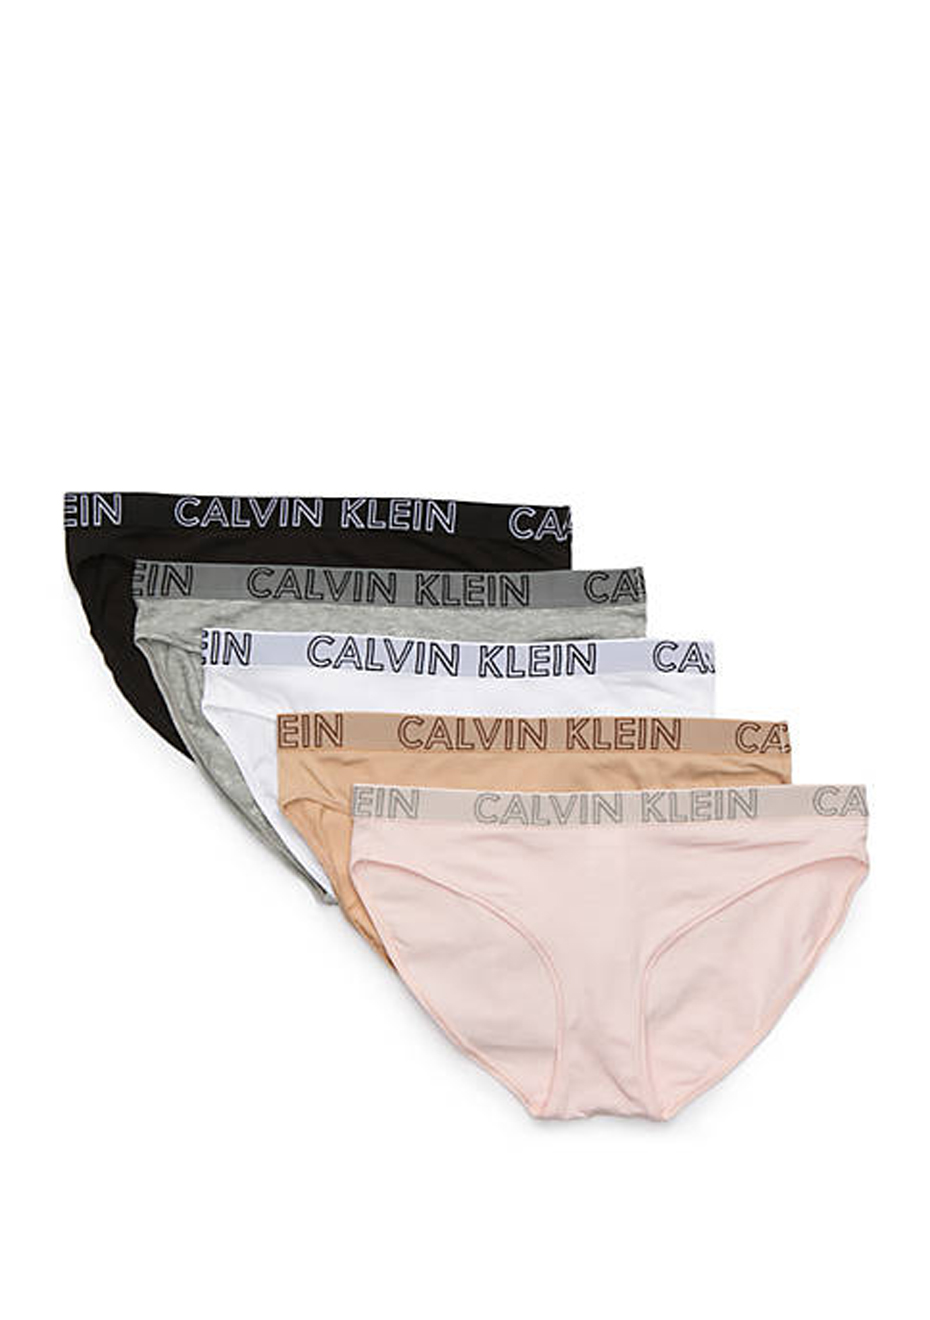 100 cotton underwear calvin klein